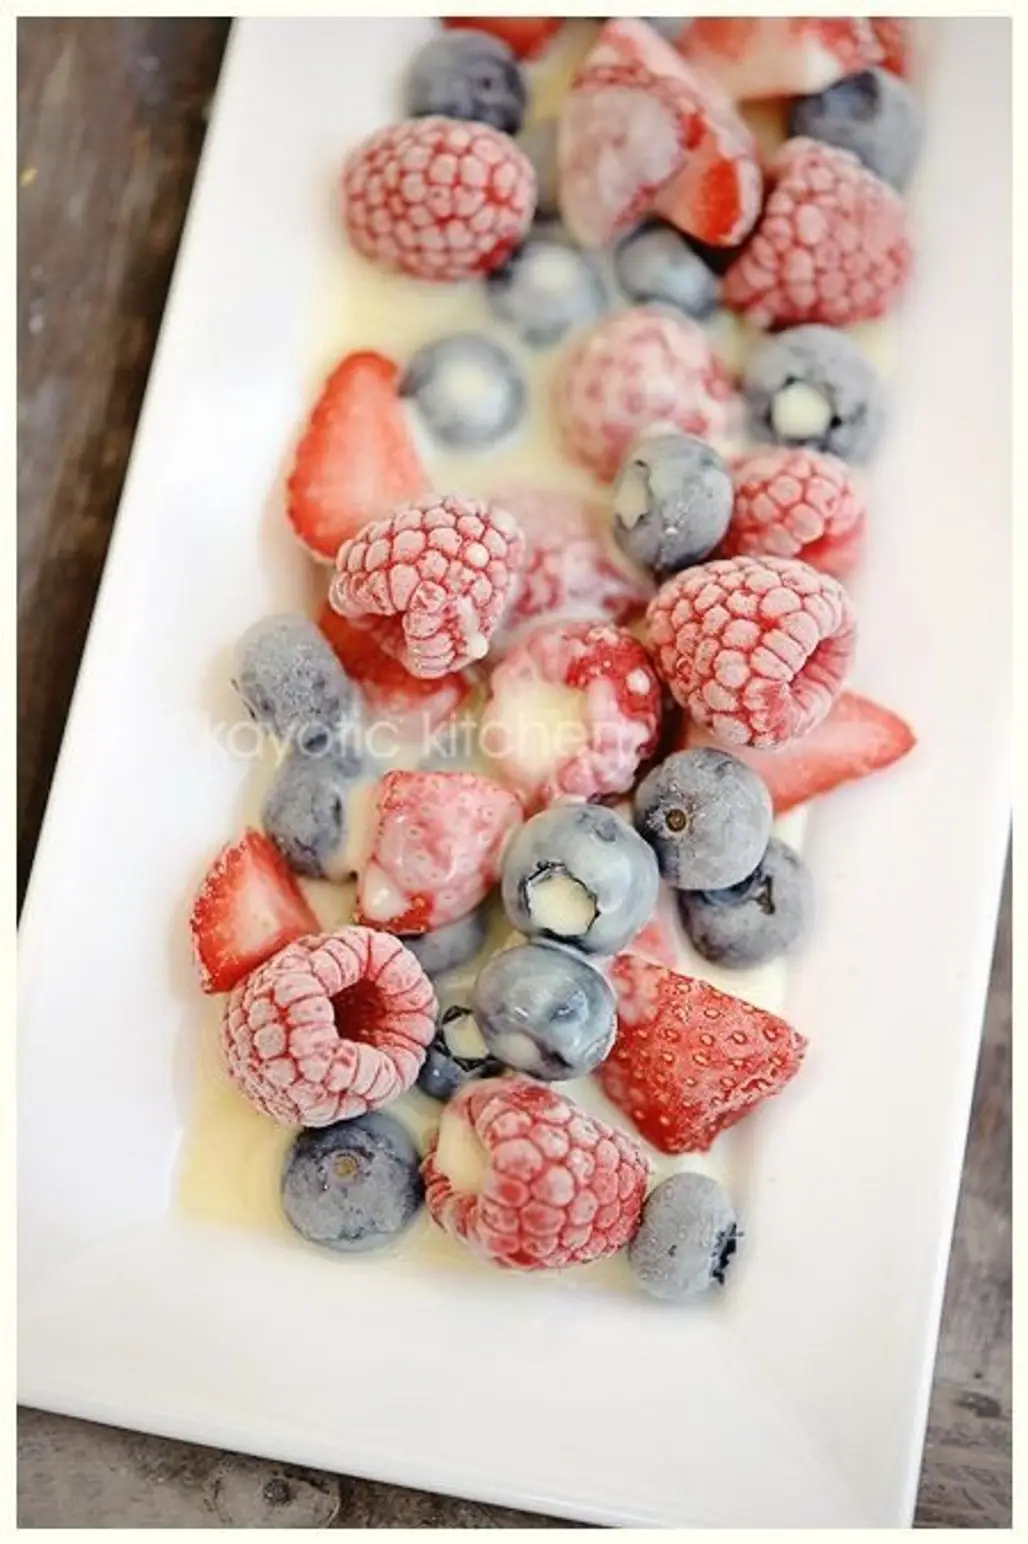 Frozen Berries